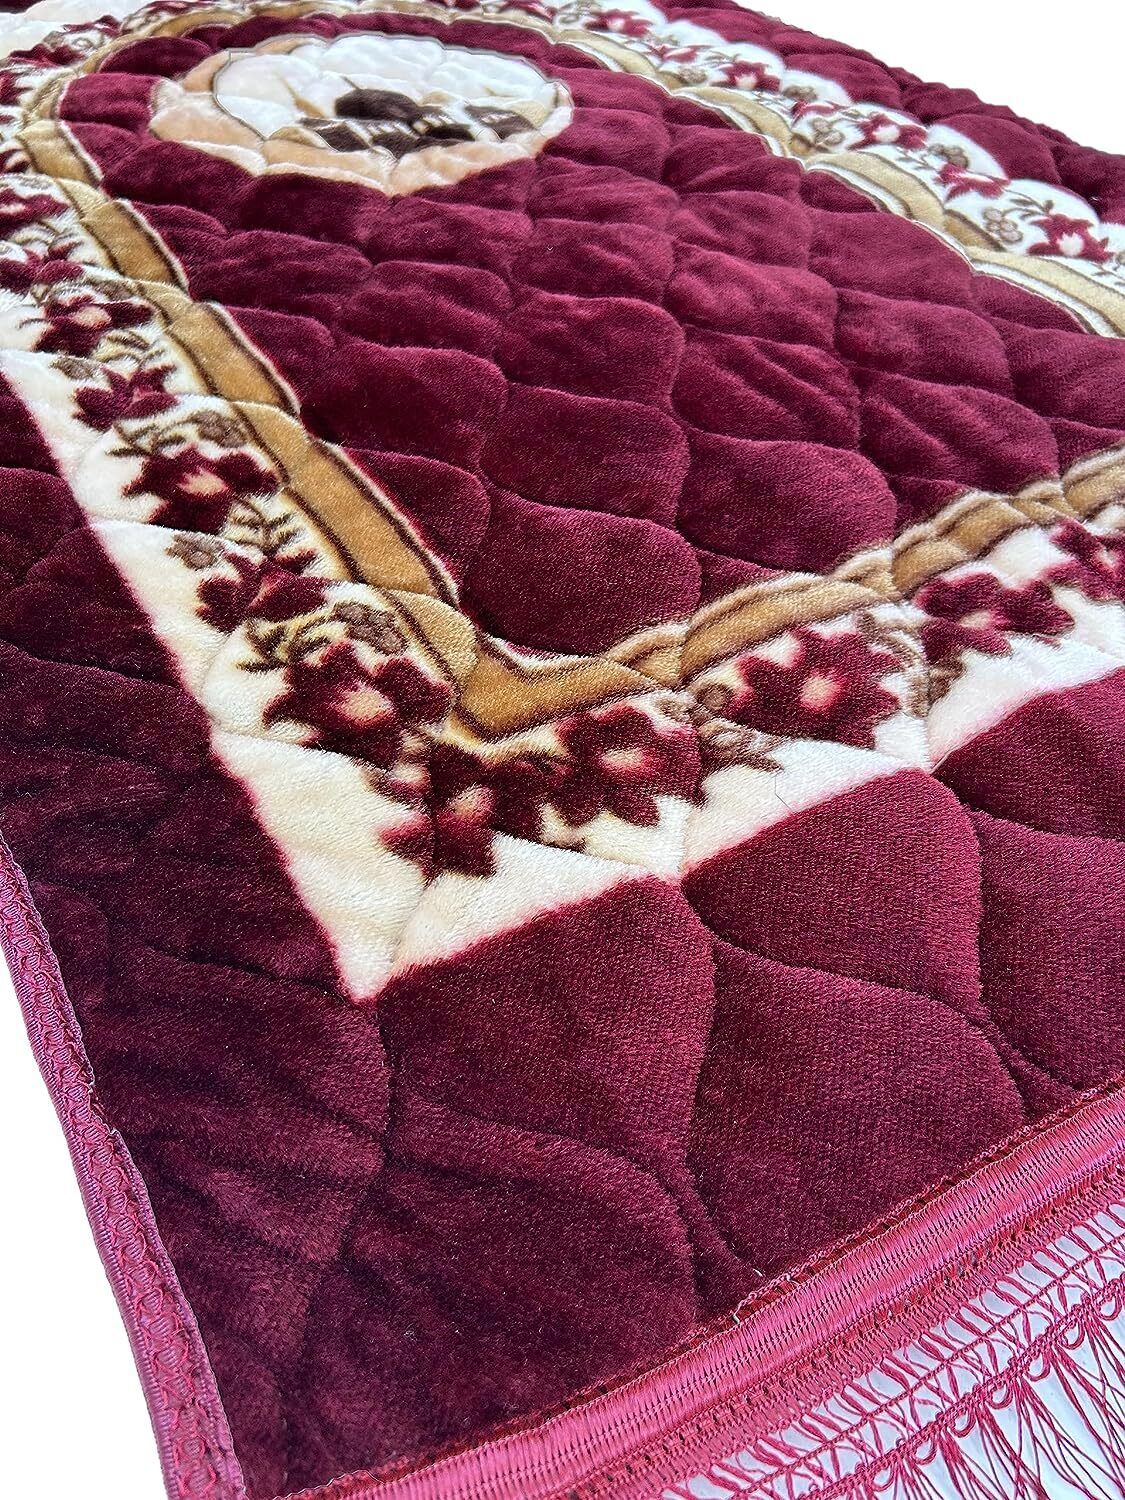 Luxury Thick Muslim Prayer Rug with Prayer Beads - Soft Islamic Mat (Red)